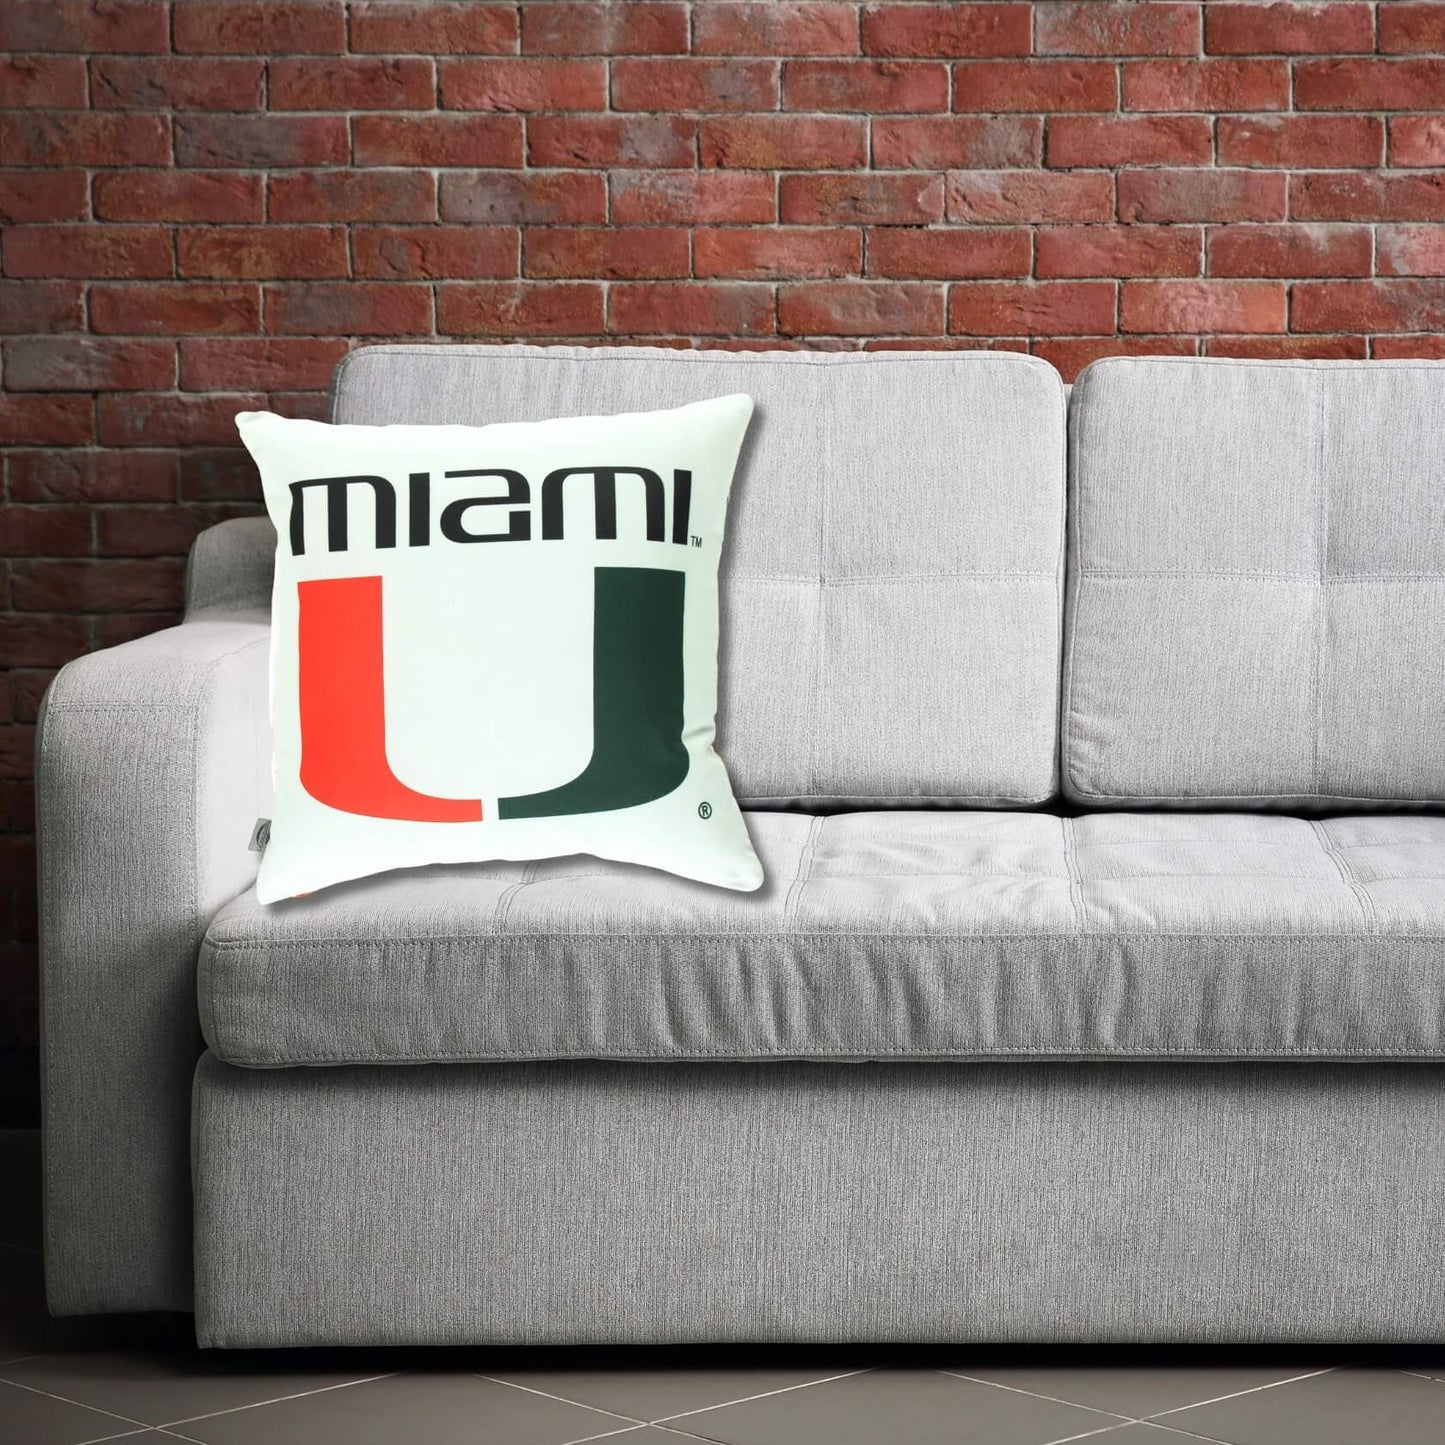 miami hurricanes pillow cushion on a sofa